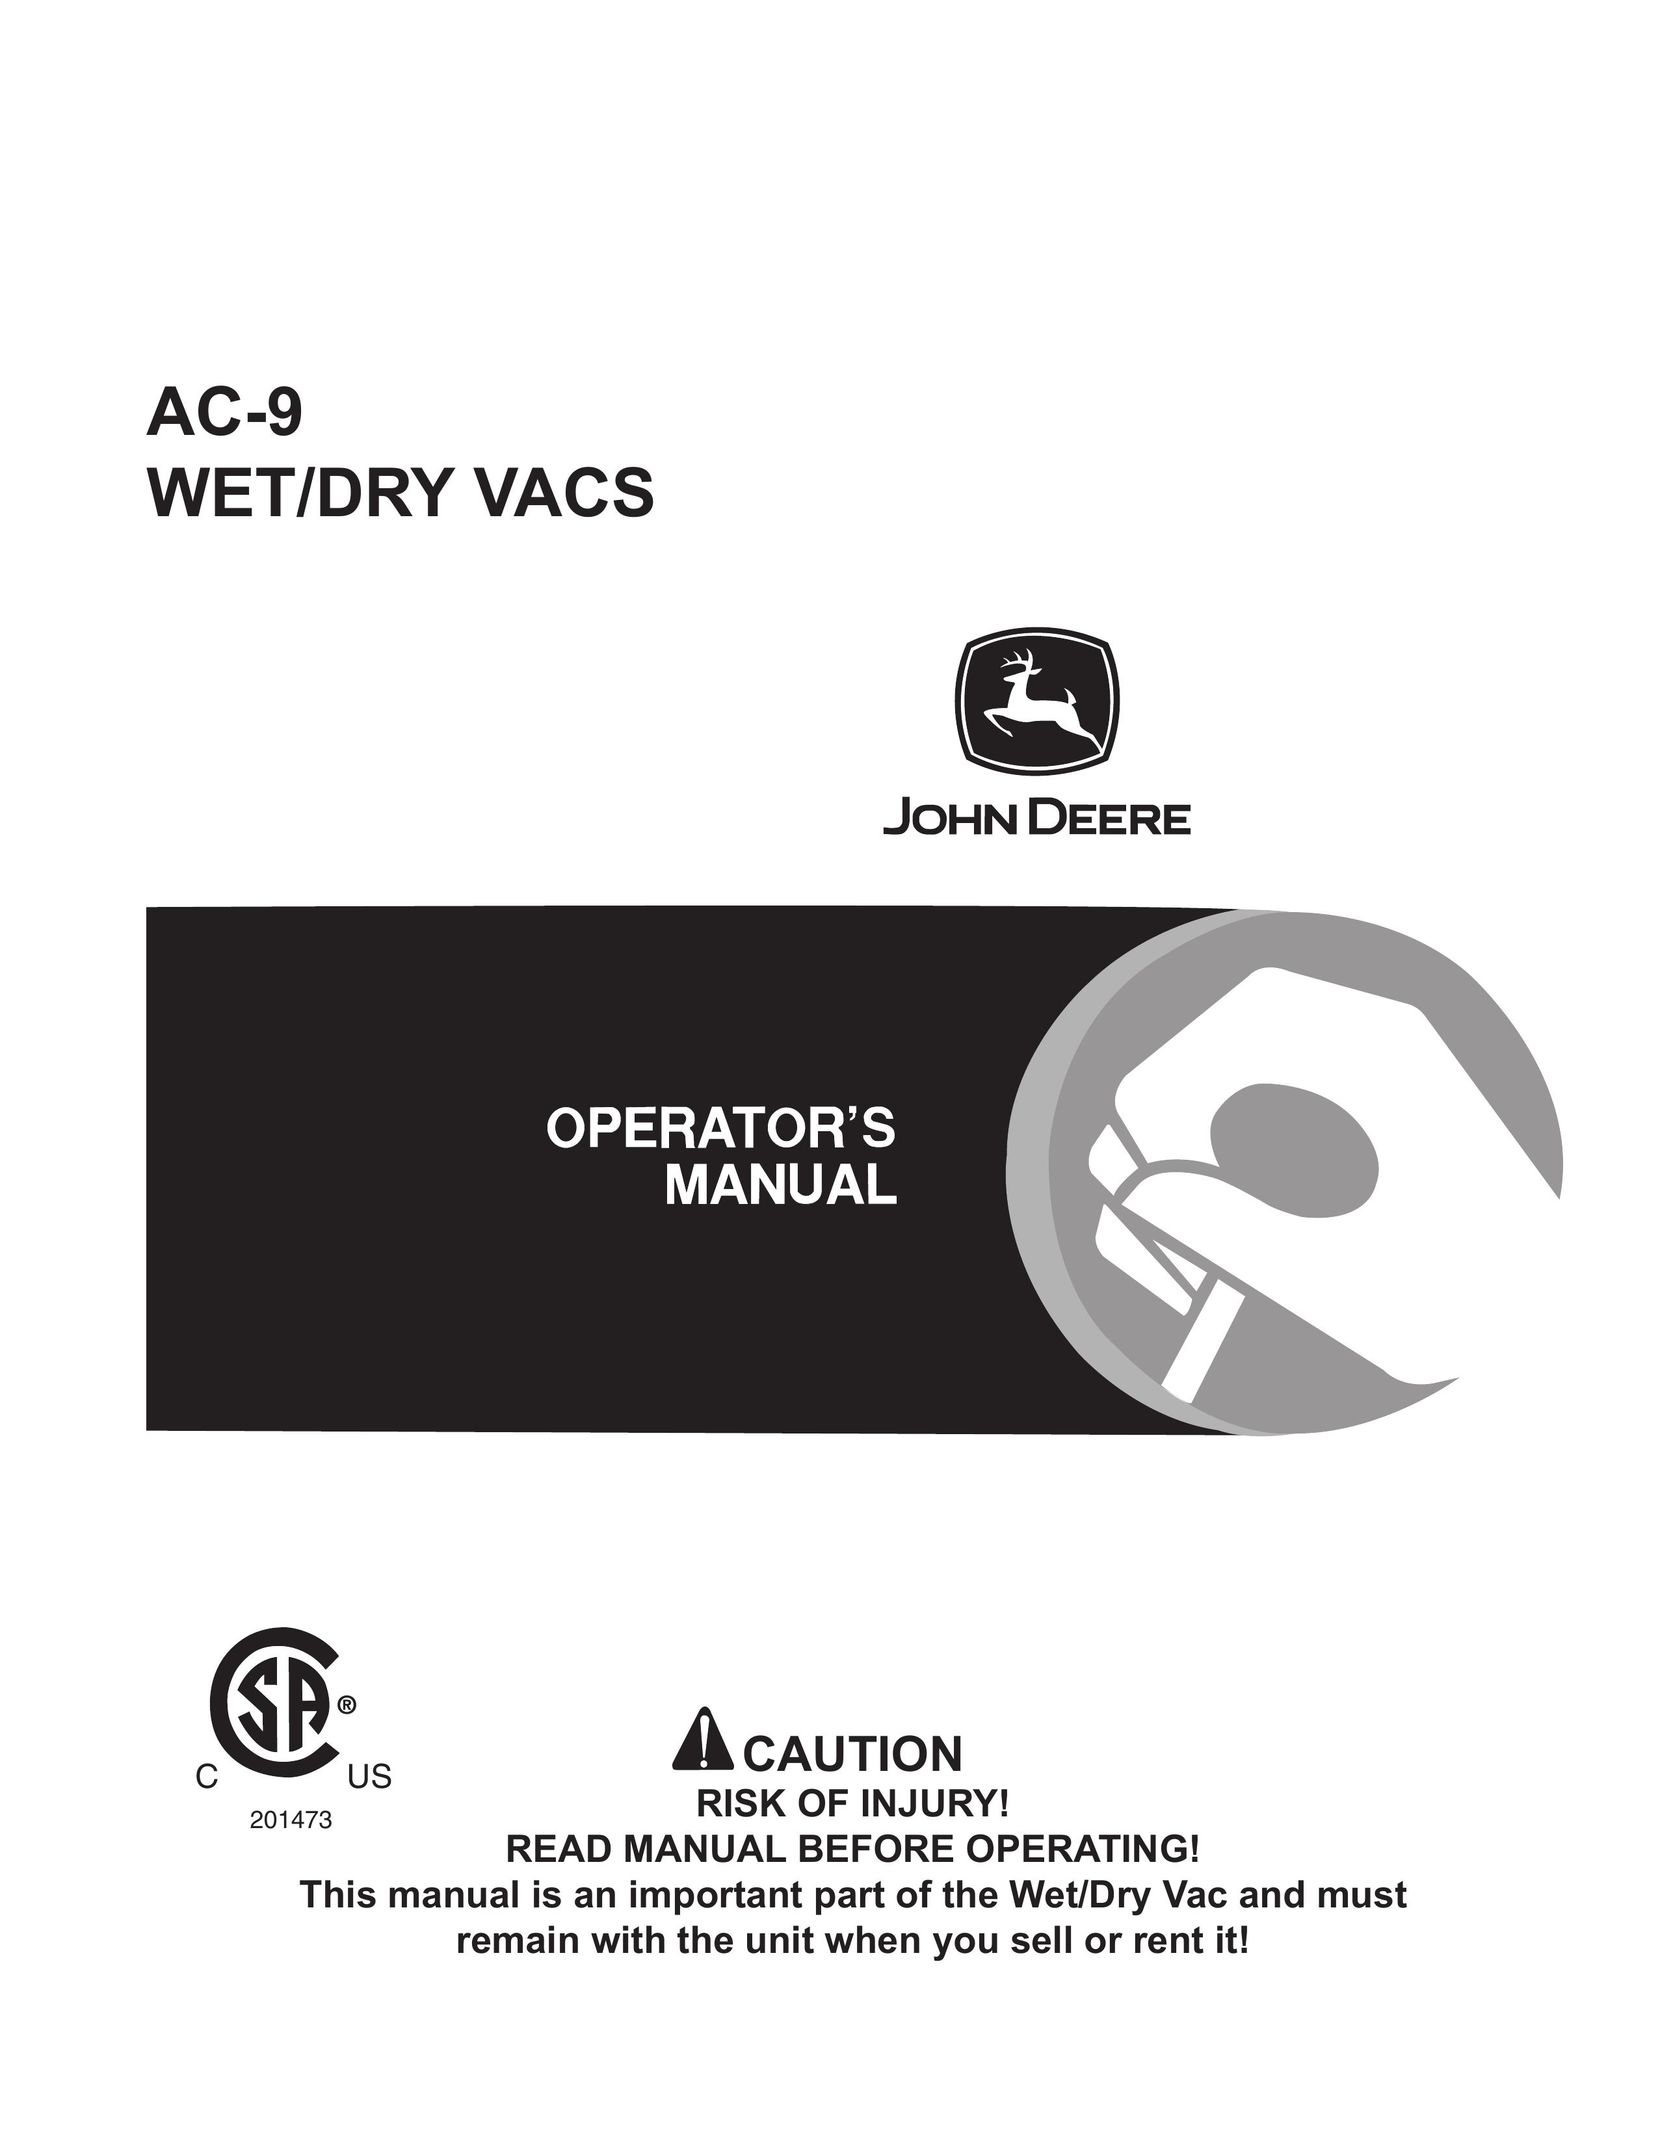 John Deere AC-9 Vacuum Cleaner User Manual